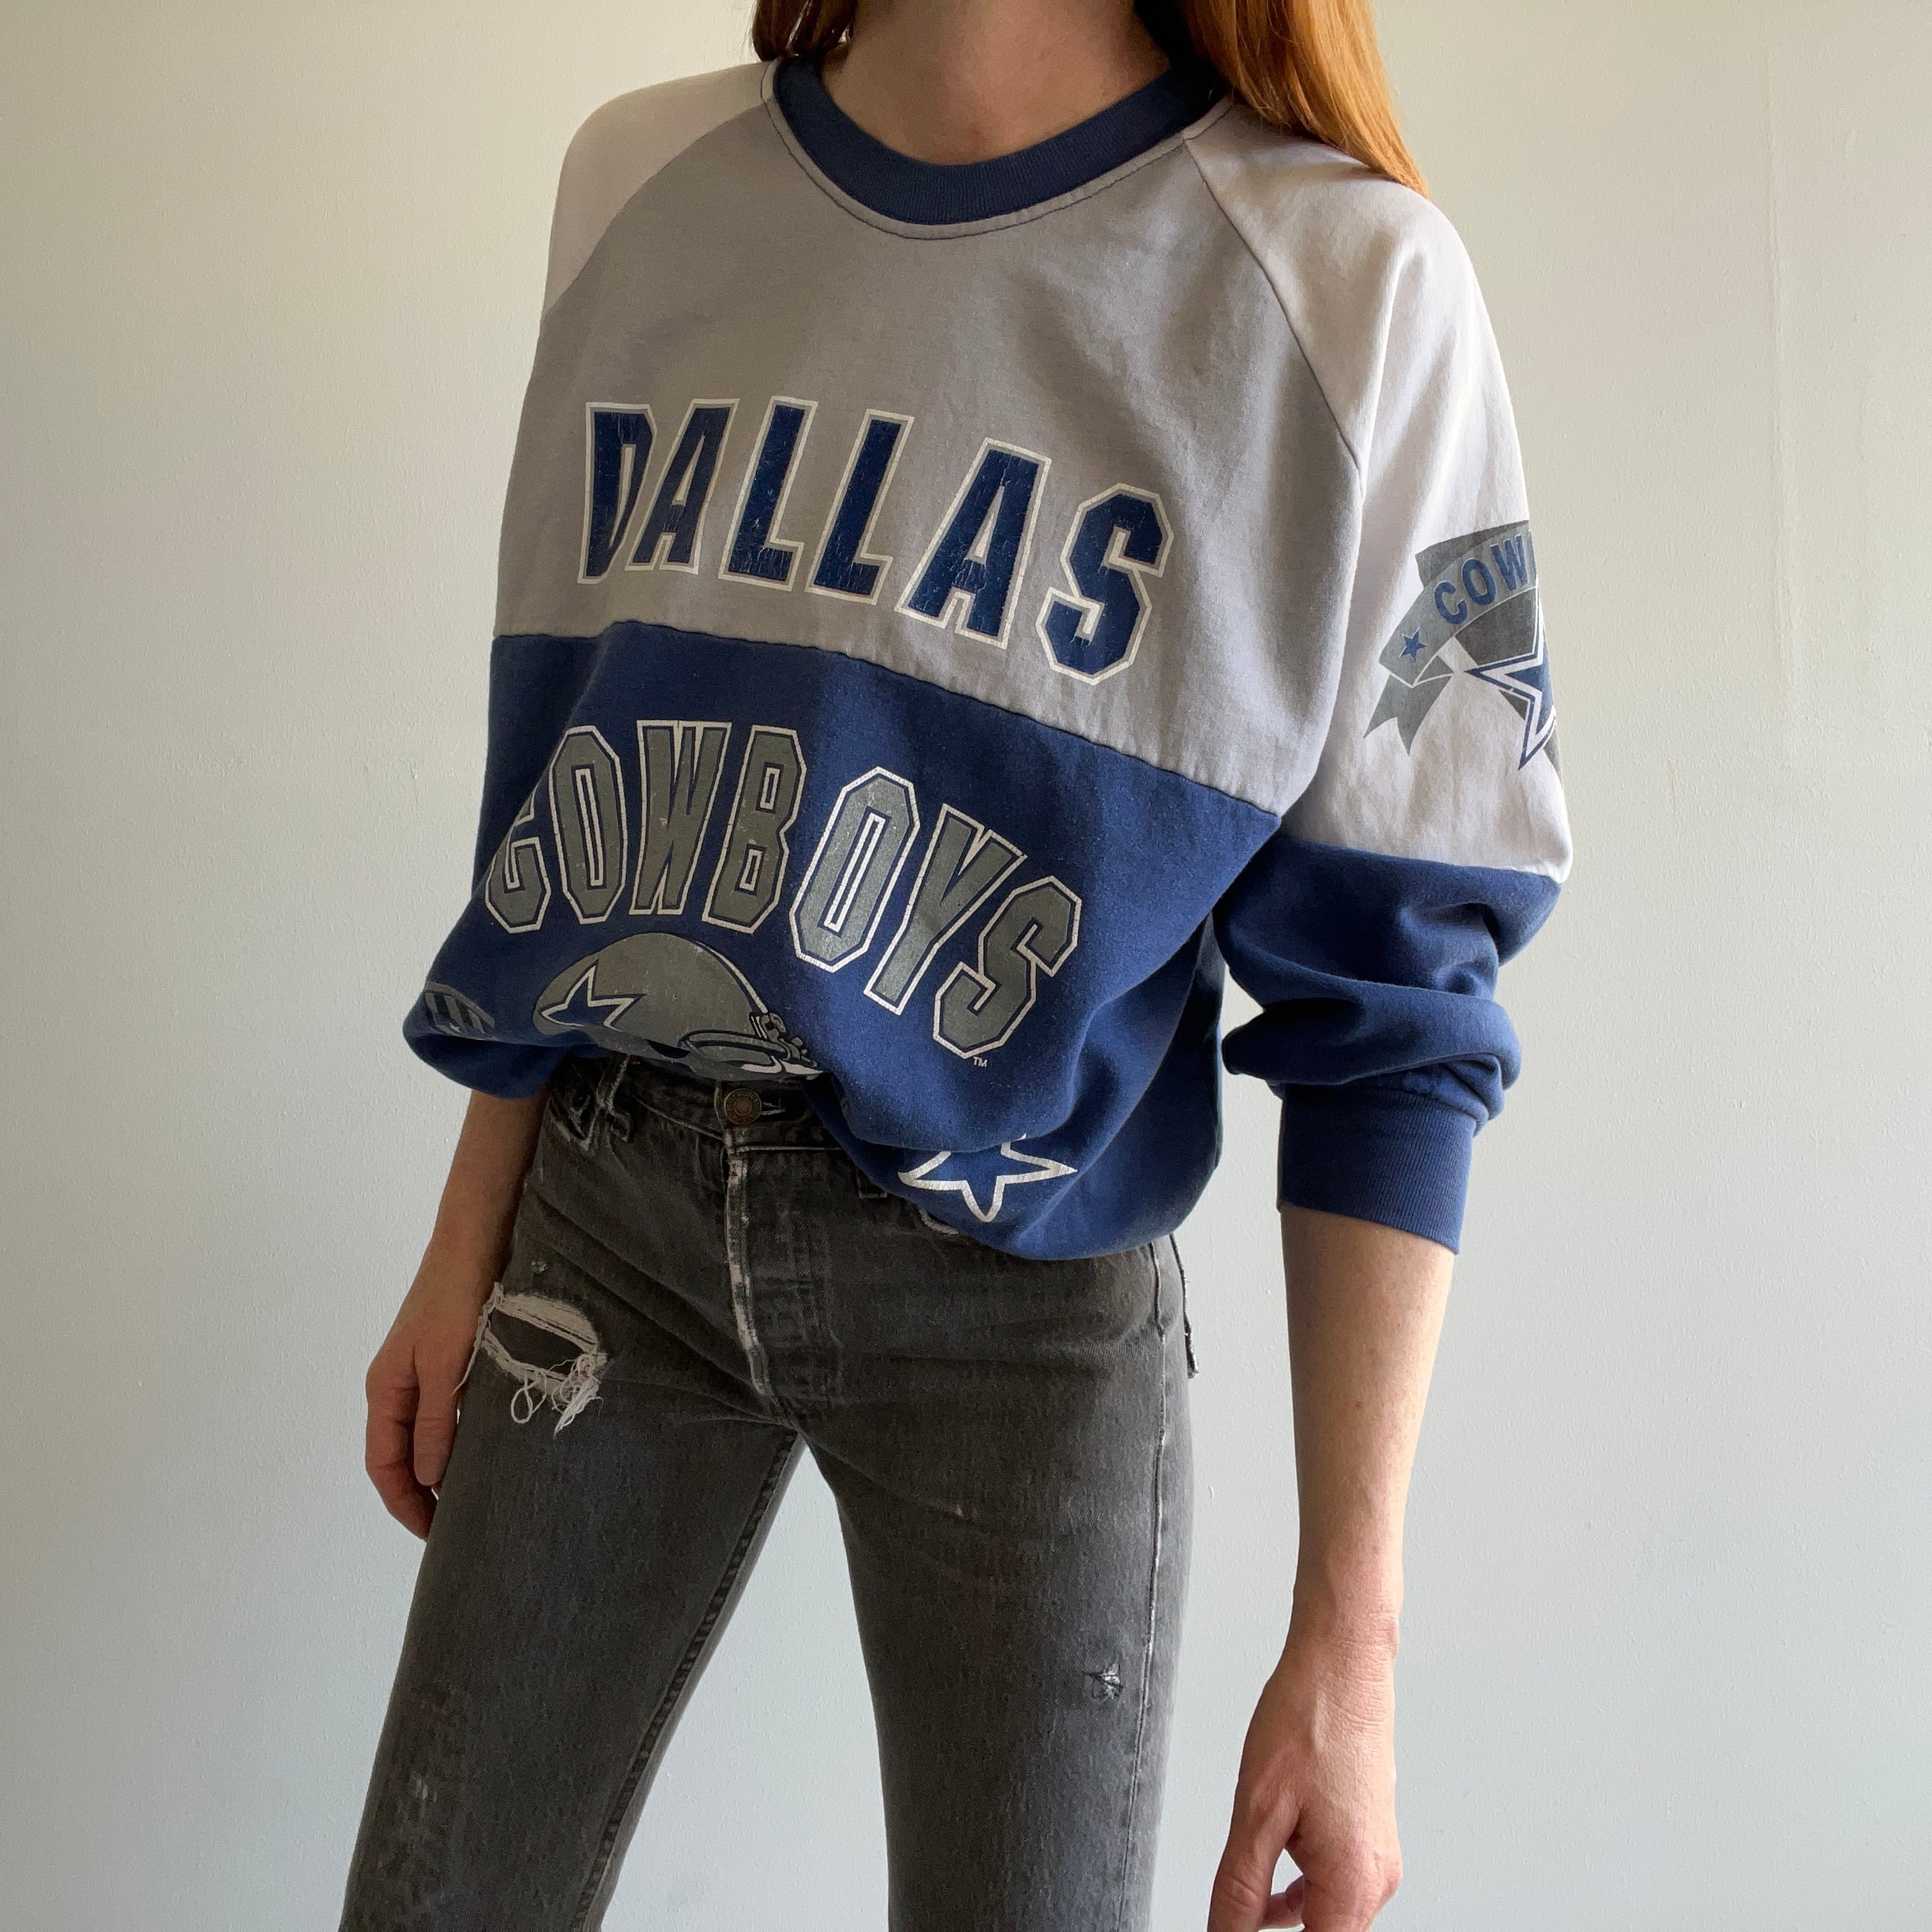 Dallas Cowboys des années 1980 - Sous licence officielle - Sweat-shirt color block